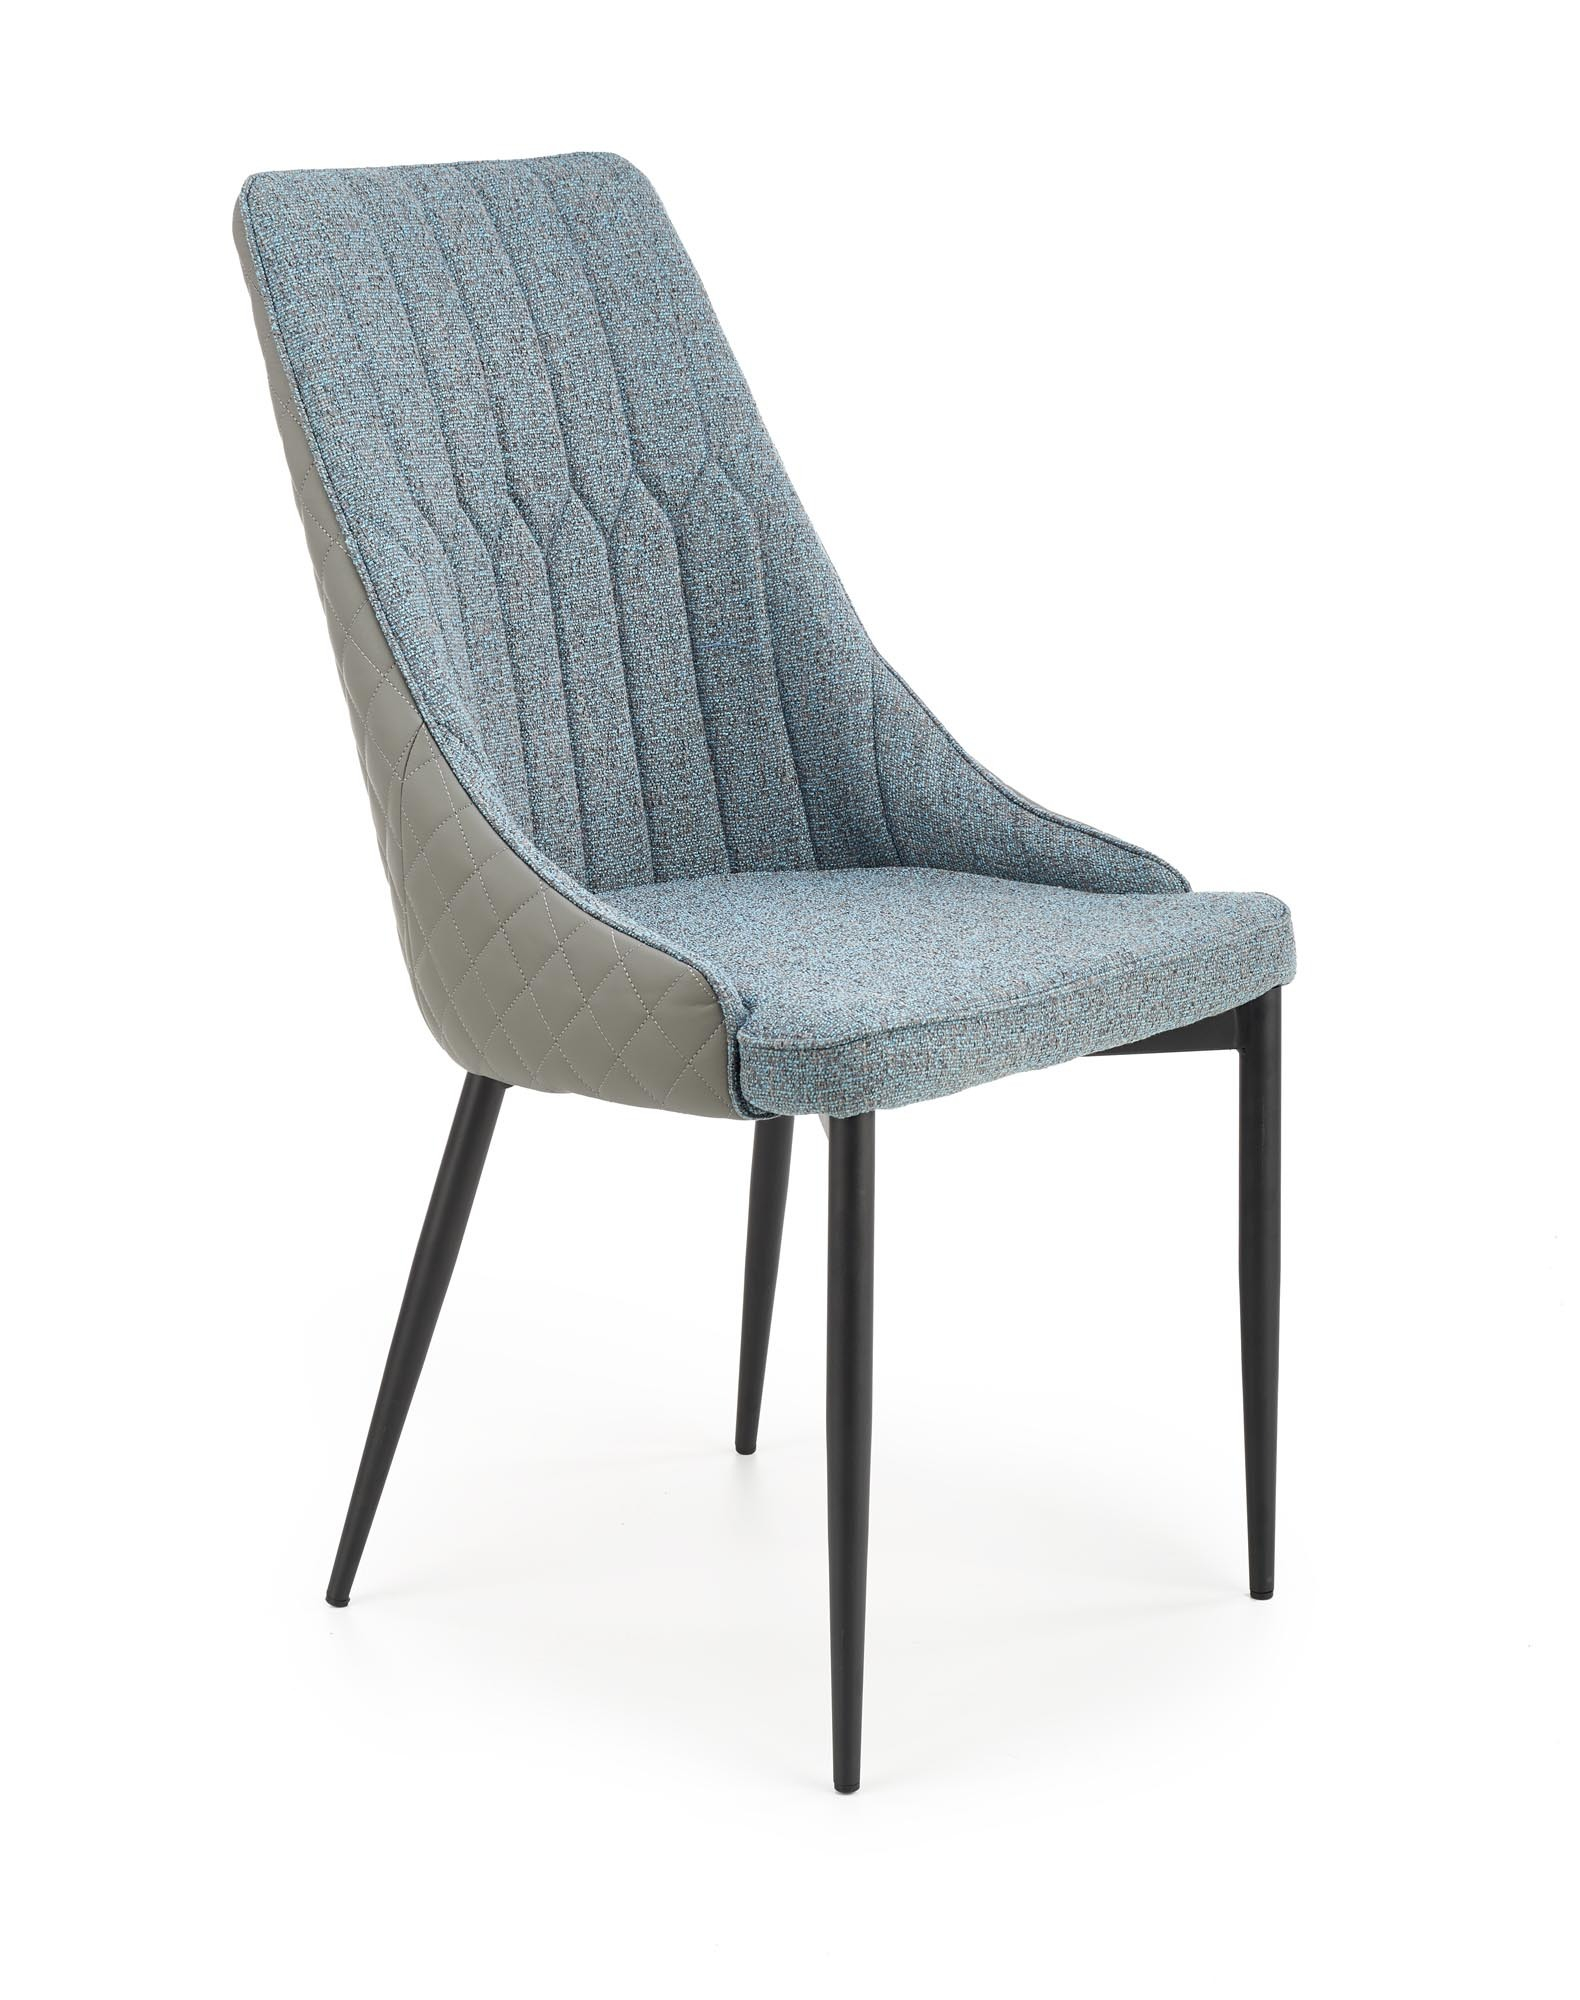 K448 krzesło, kolor: jasny popielaty - niebieski